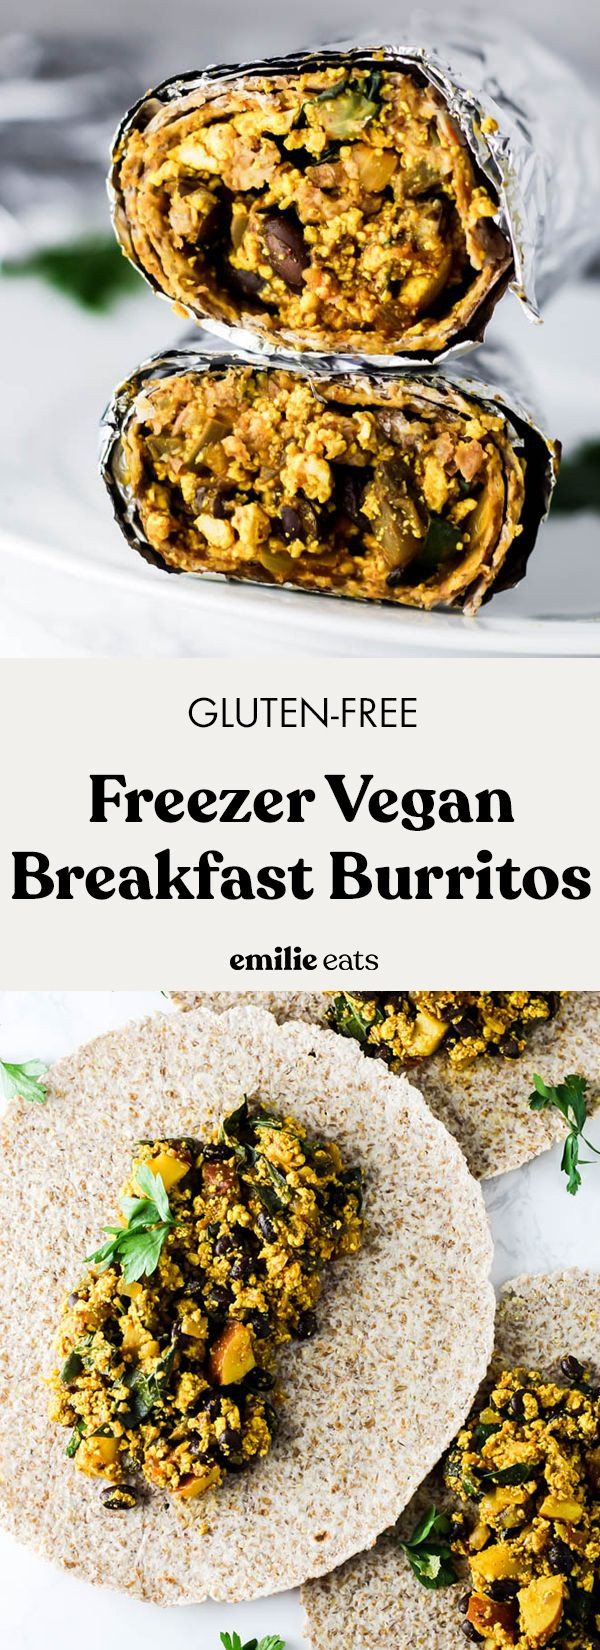 Vegan Breakfast Burrito Freezer
 Freezer Vegan Breakfast Burrito Recipe in 2020